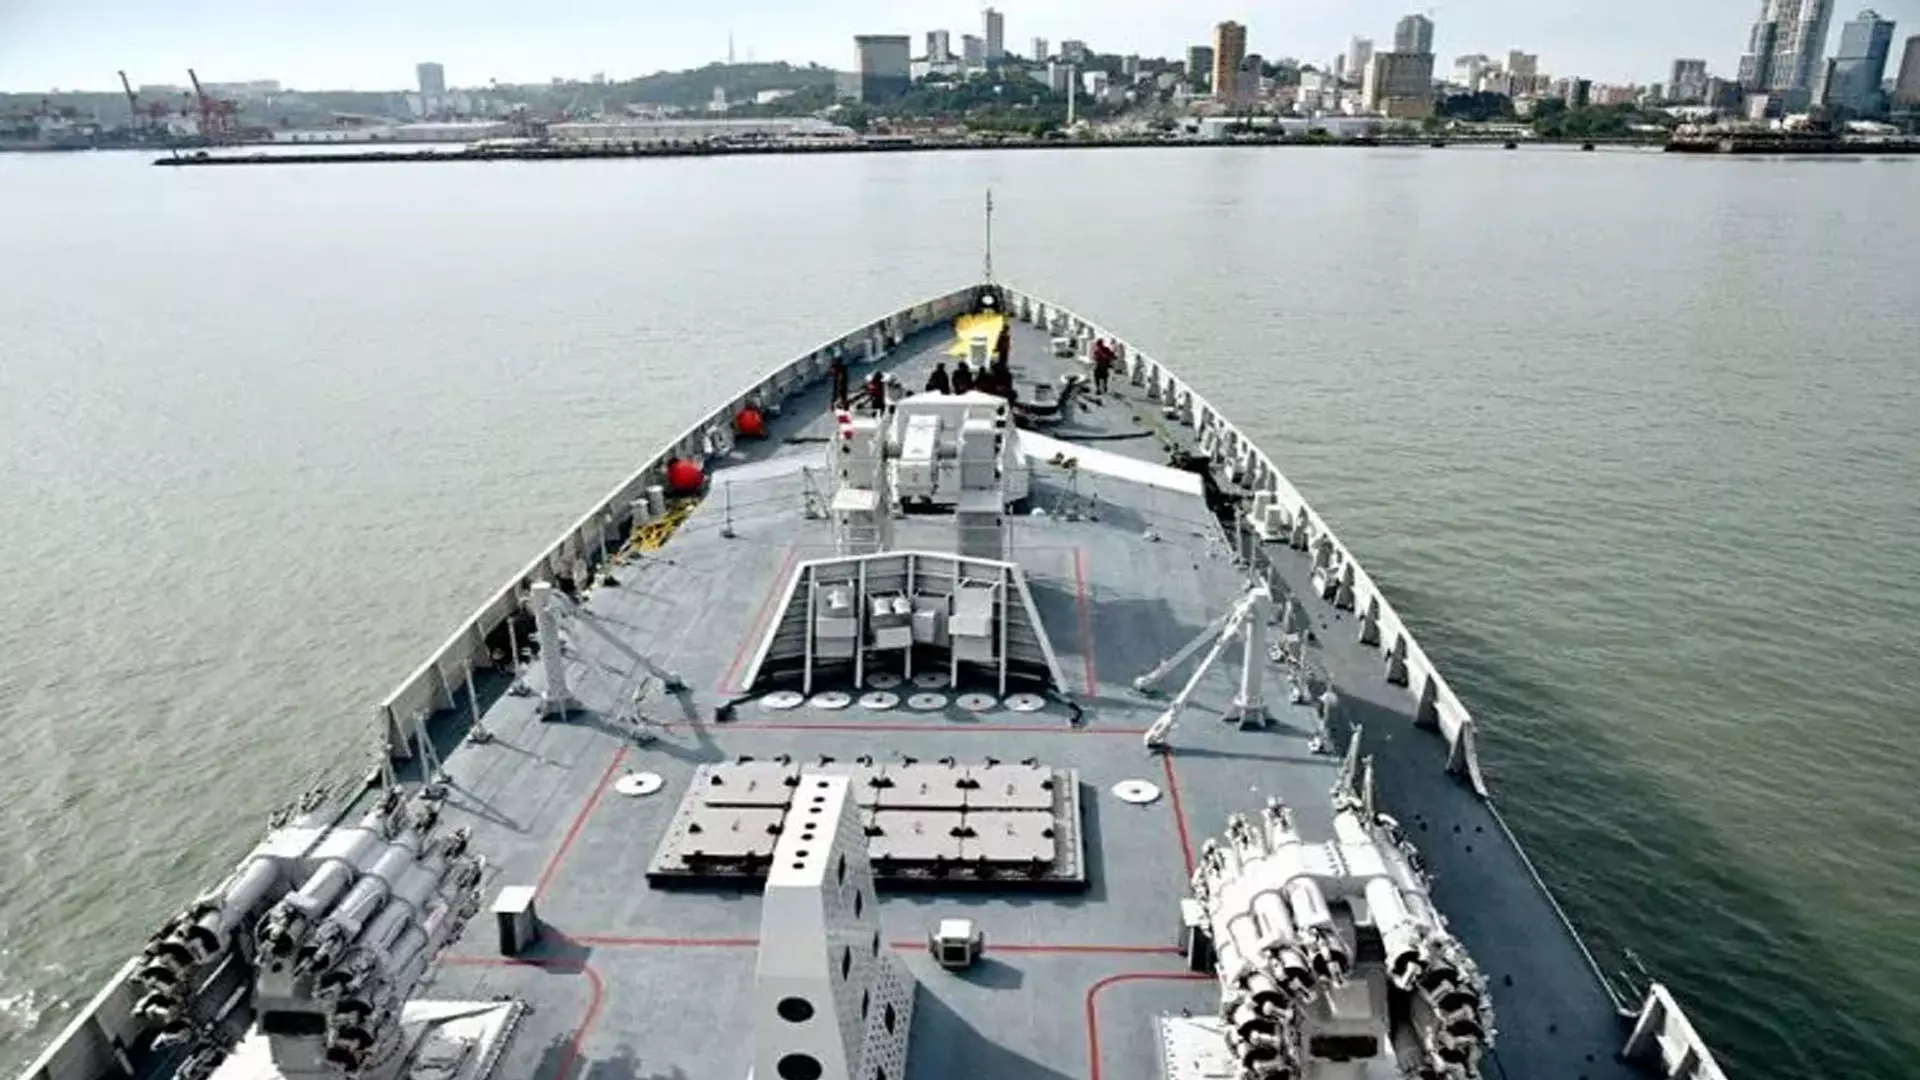 Busan: संयुक्त राष्ट्र प्रतिबंधों का उल्लंघन करने के संदेह में मालवाहक जहाज जब्त किया